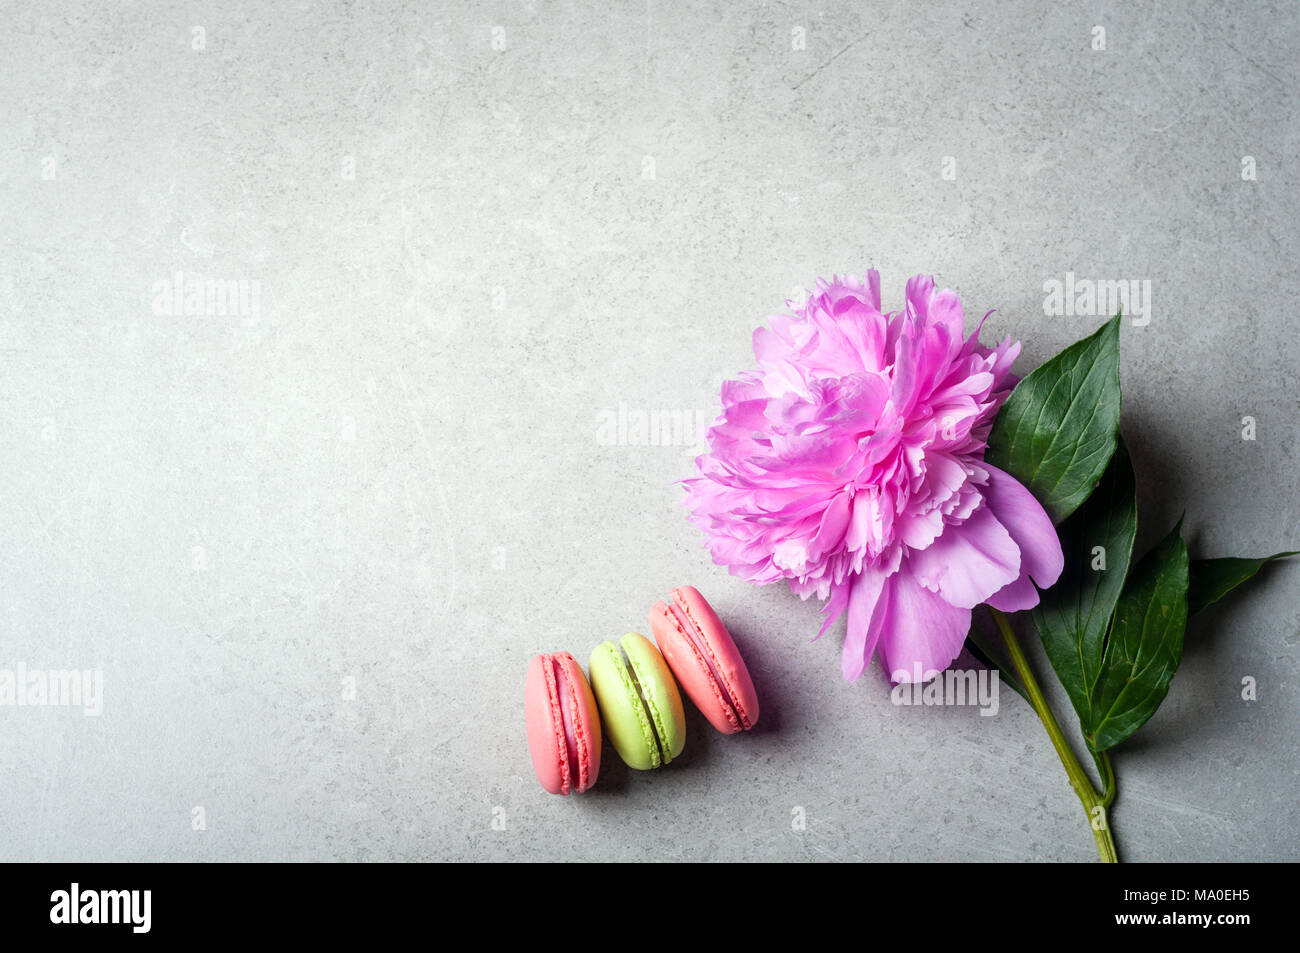 La Pivoine Fleur De Macarons Sur Fond Gris Vacances Joyeux Anniversaire Concept Annivarsary Photo Stock Alamy